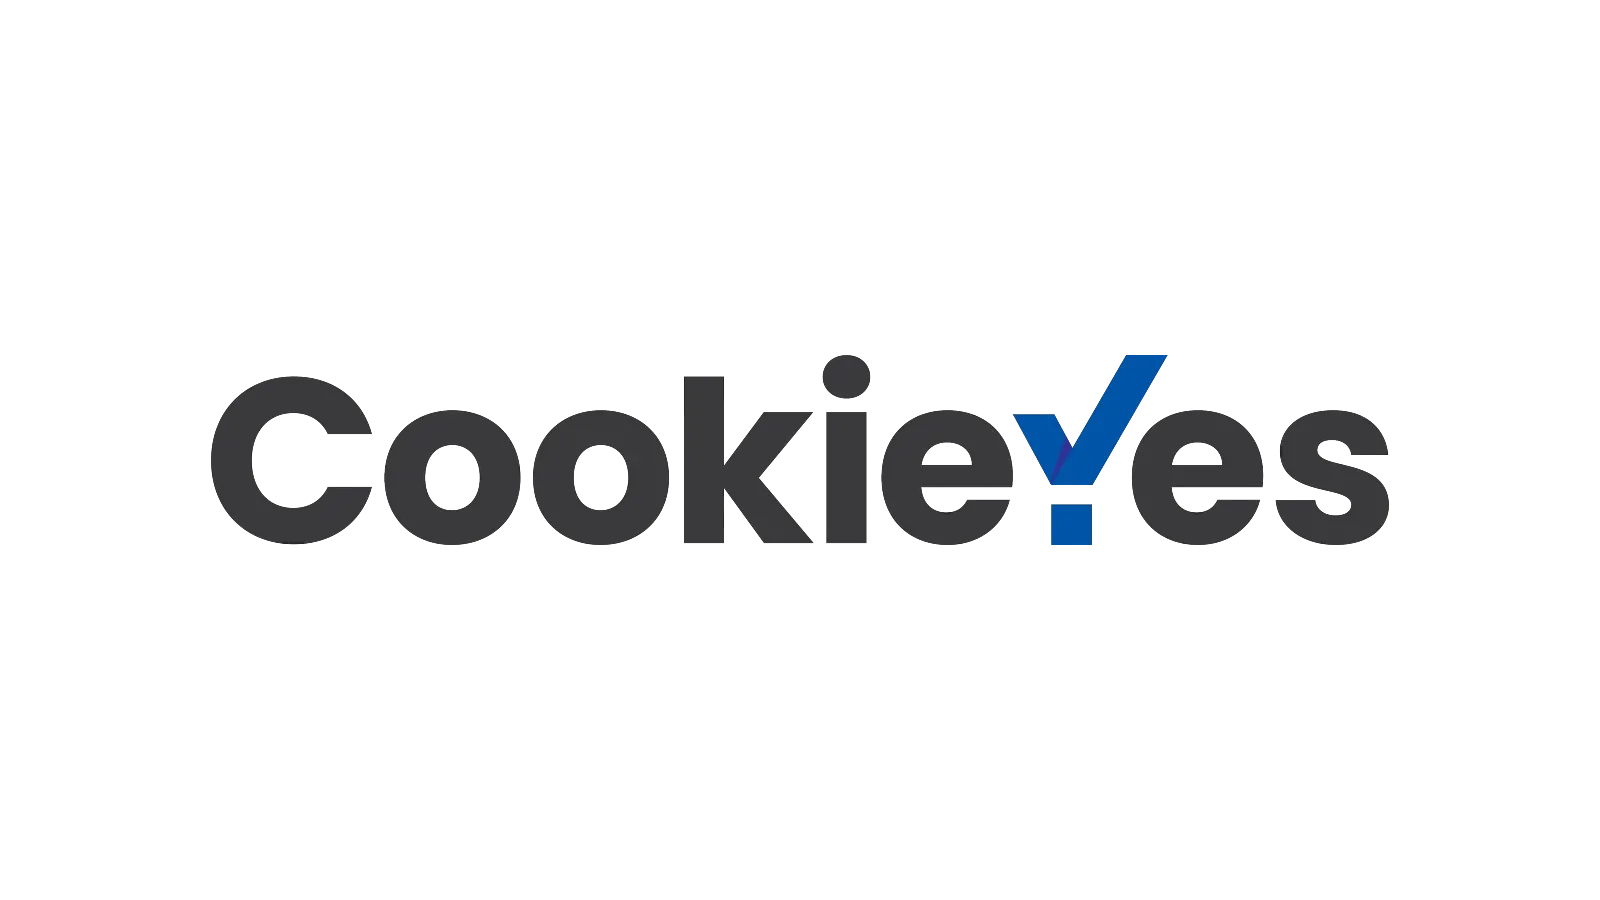 CookieYes